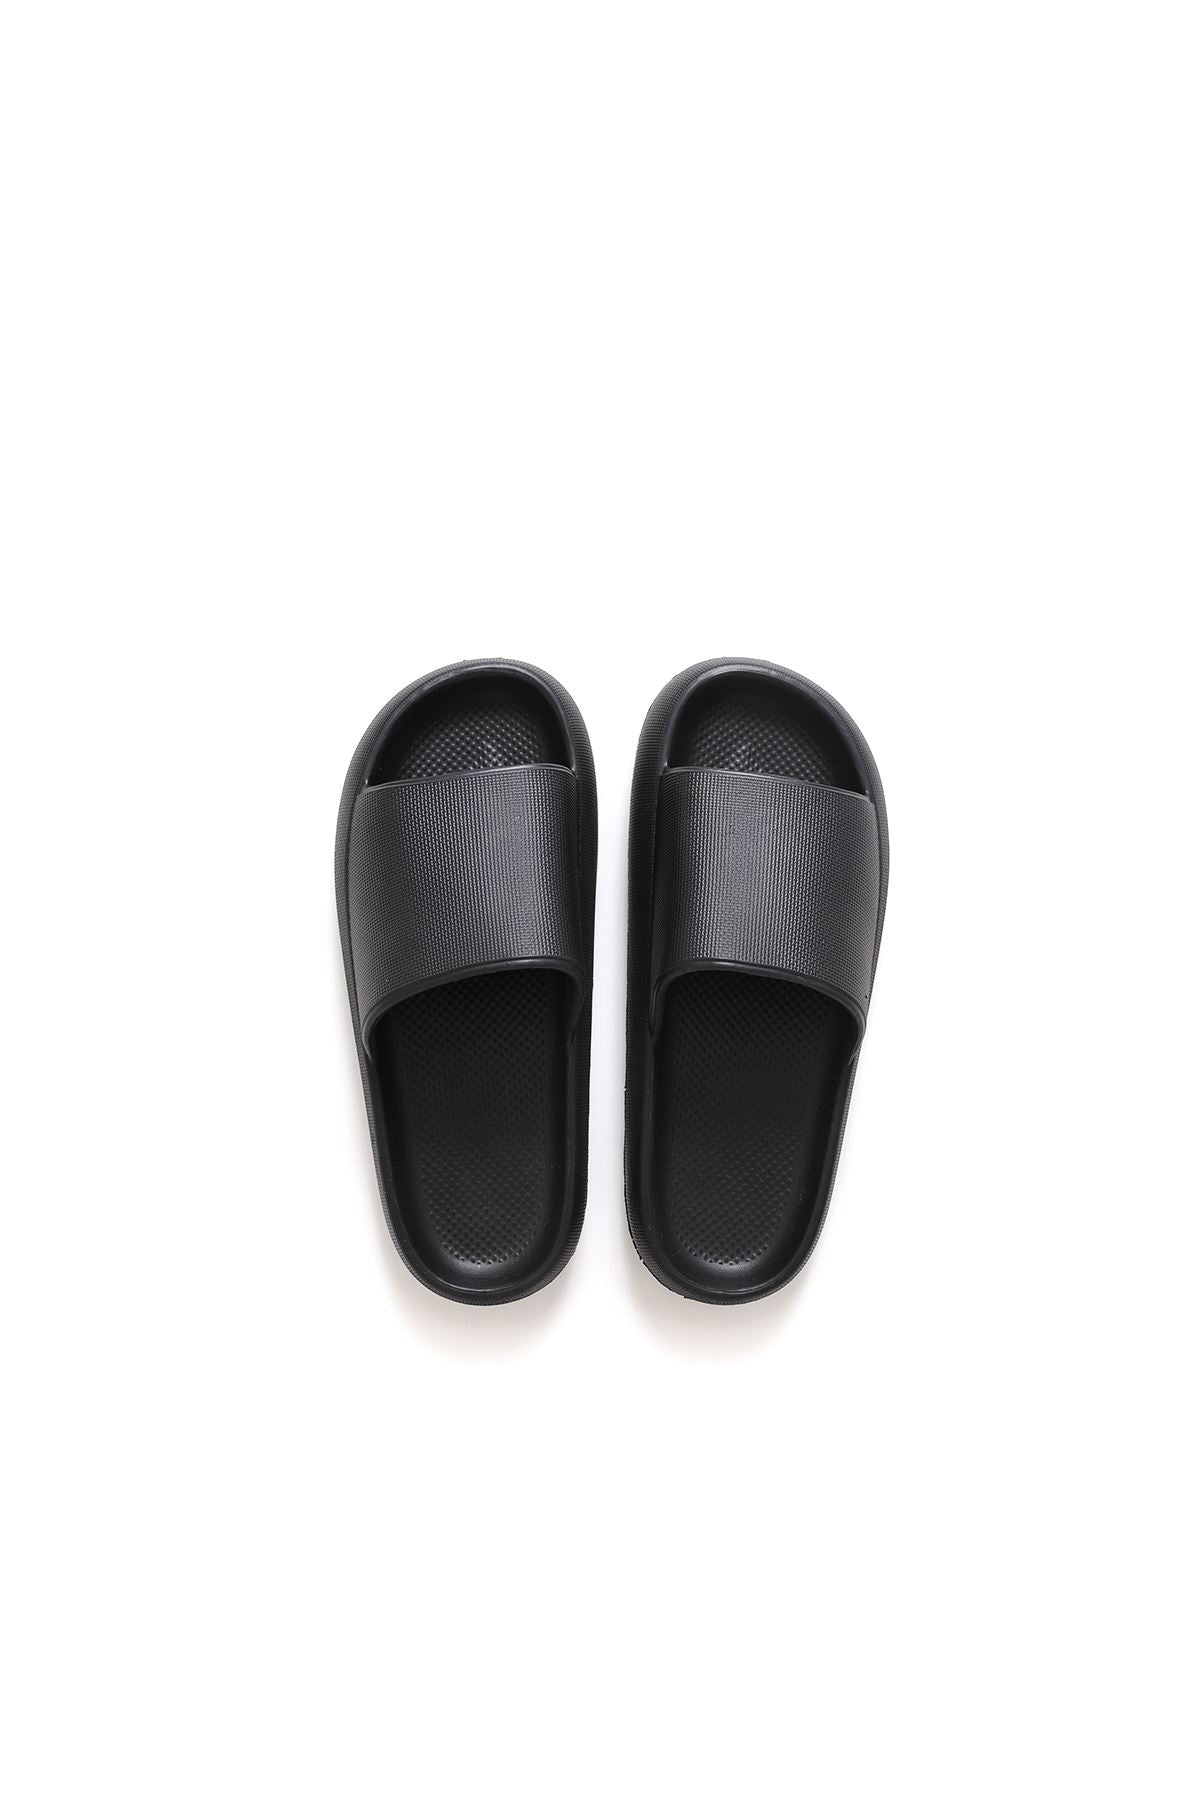 TRL001 Polyurethane Men's Slippers Black